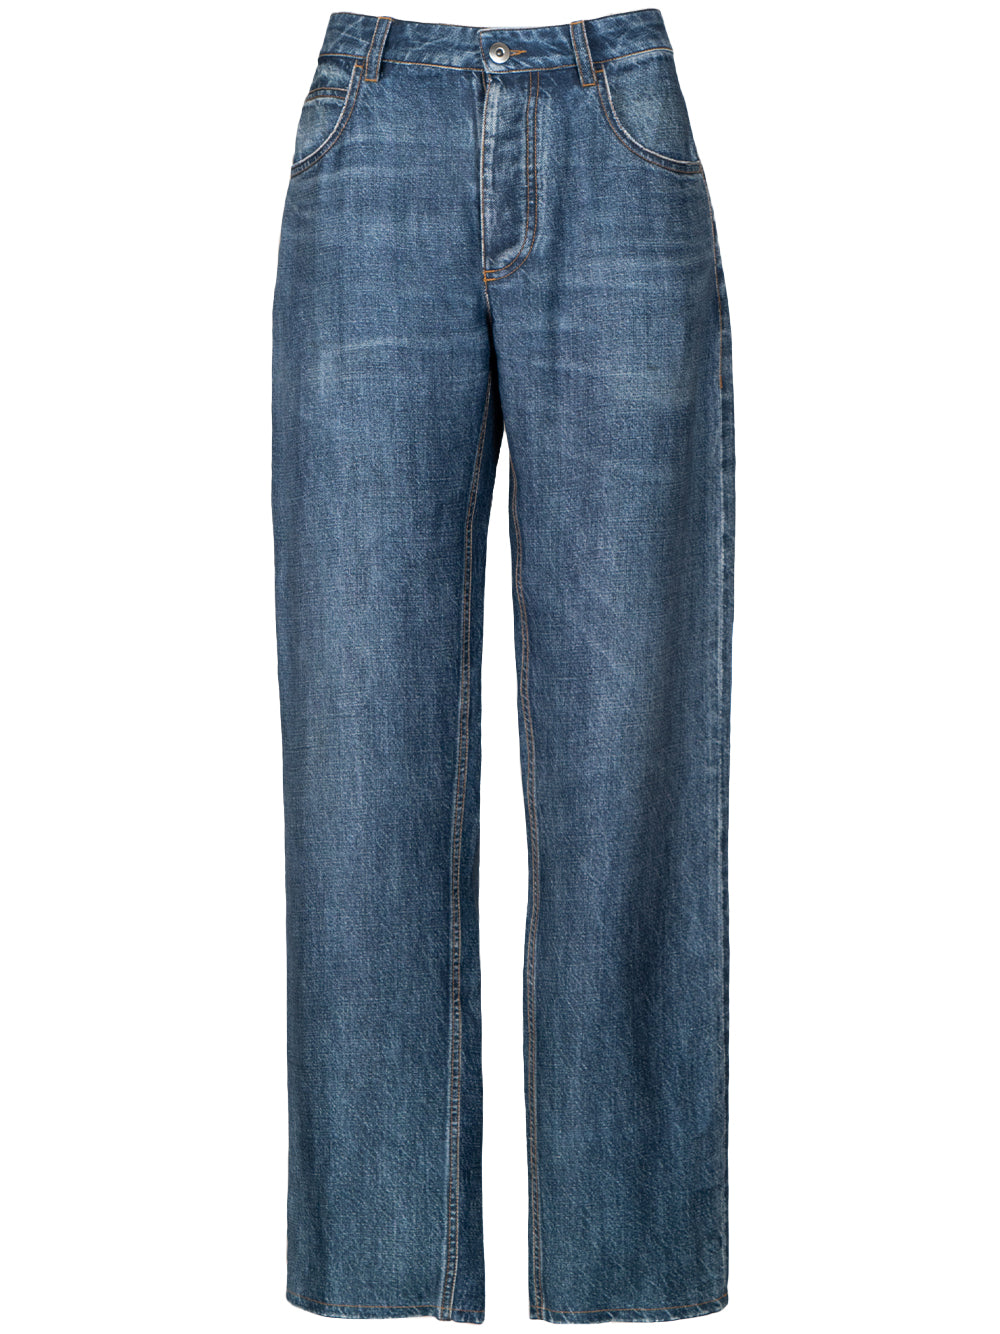 Jean-effect trousers